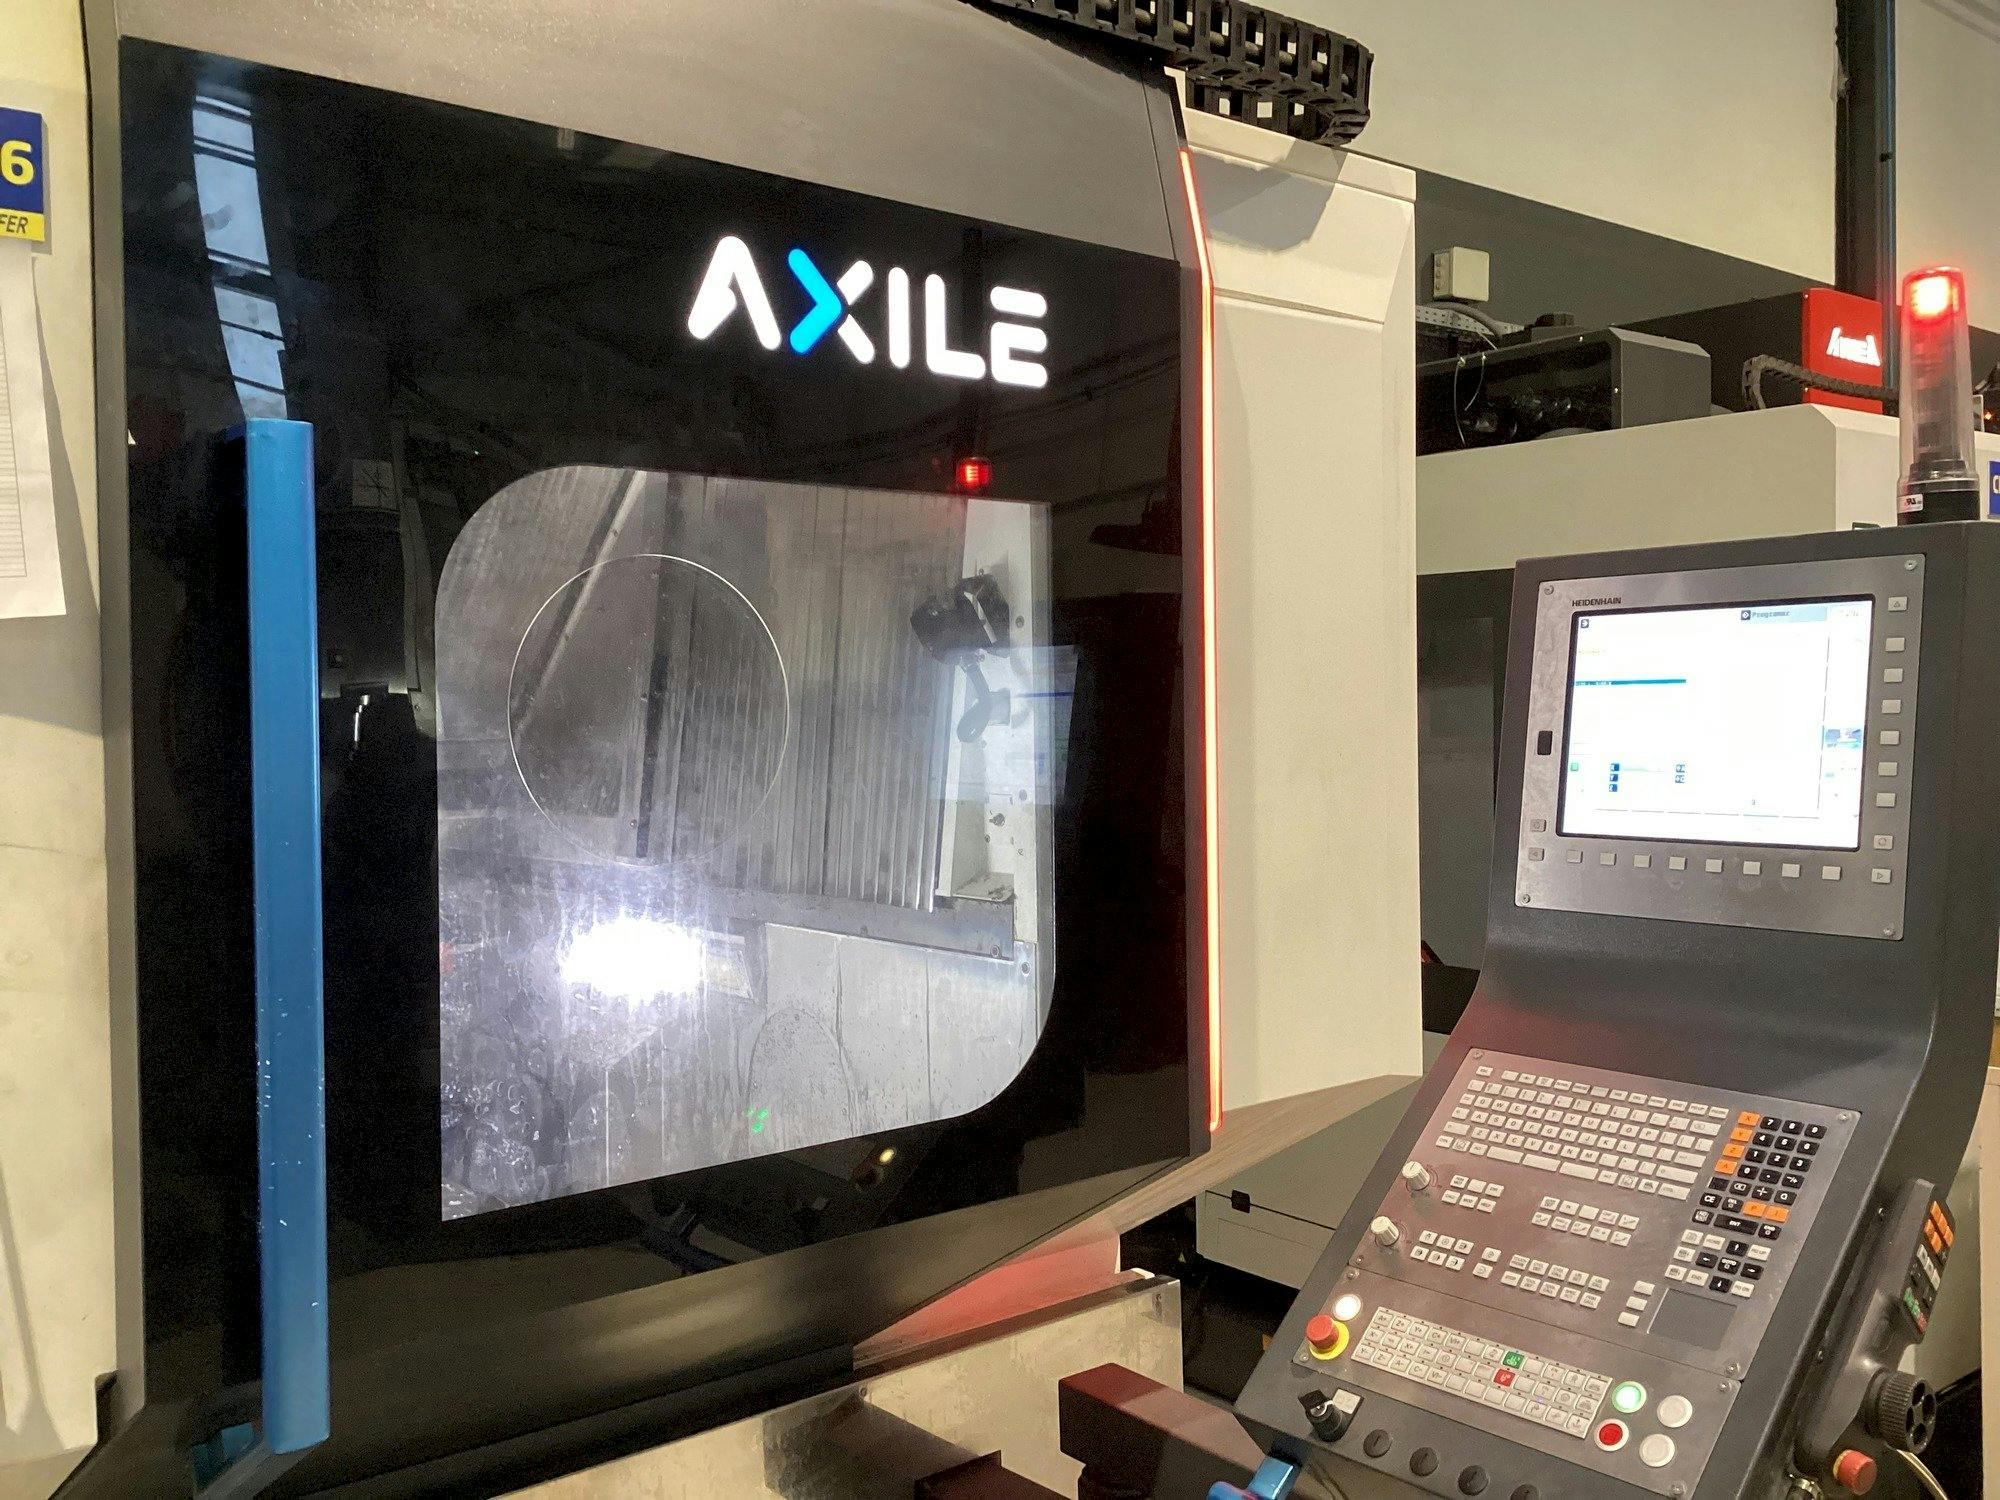 Vista frontale della macchina AXILE G6